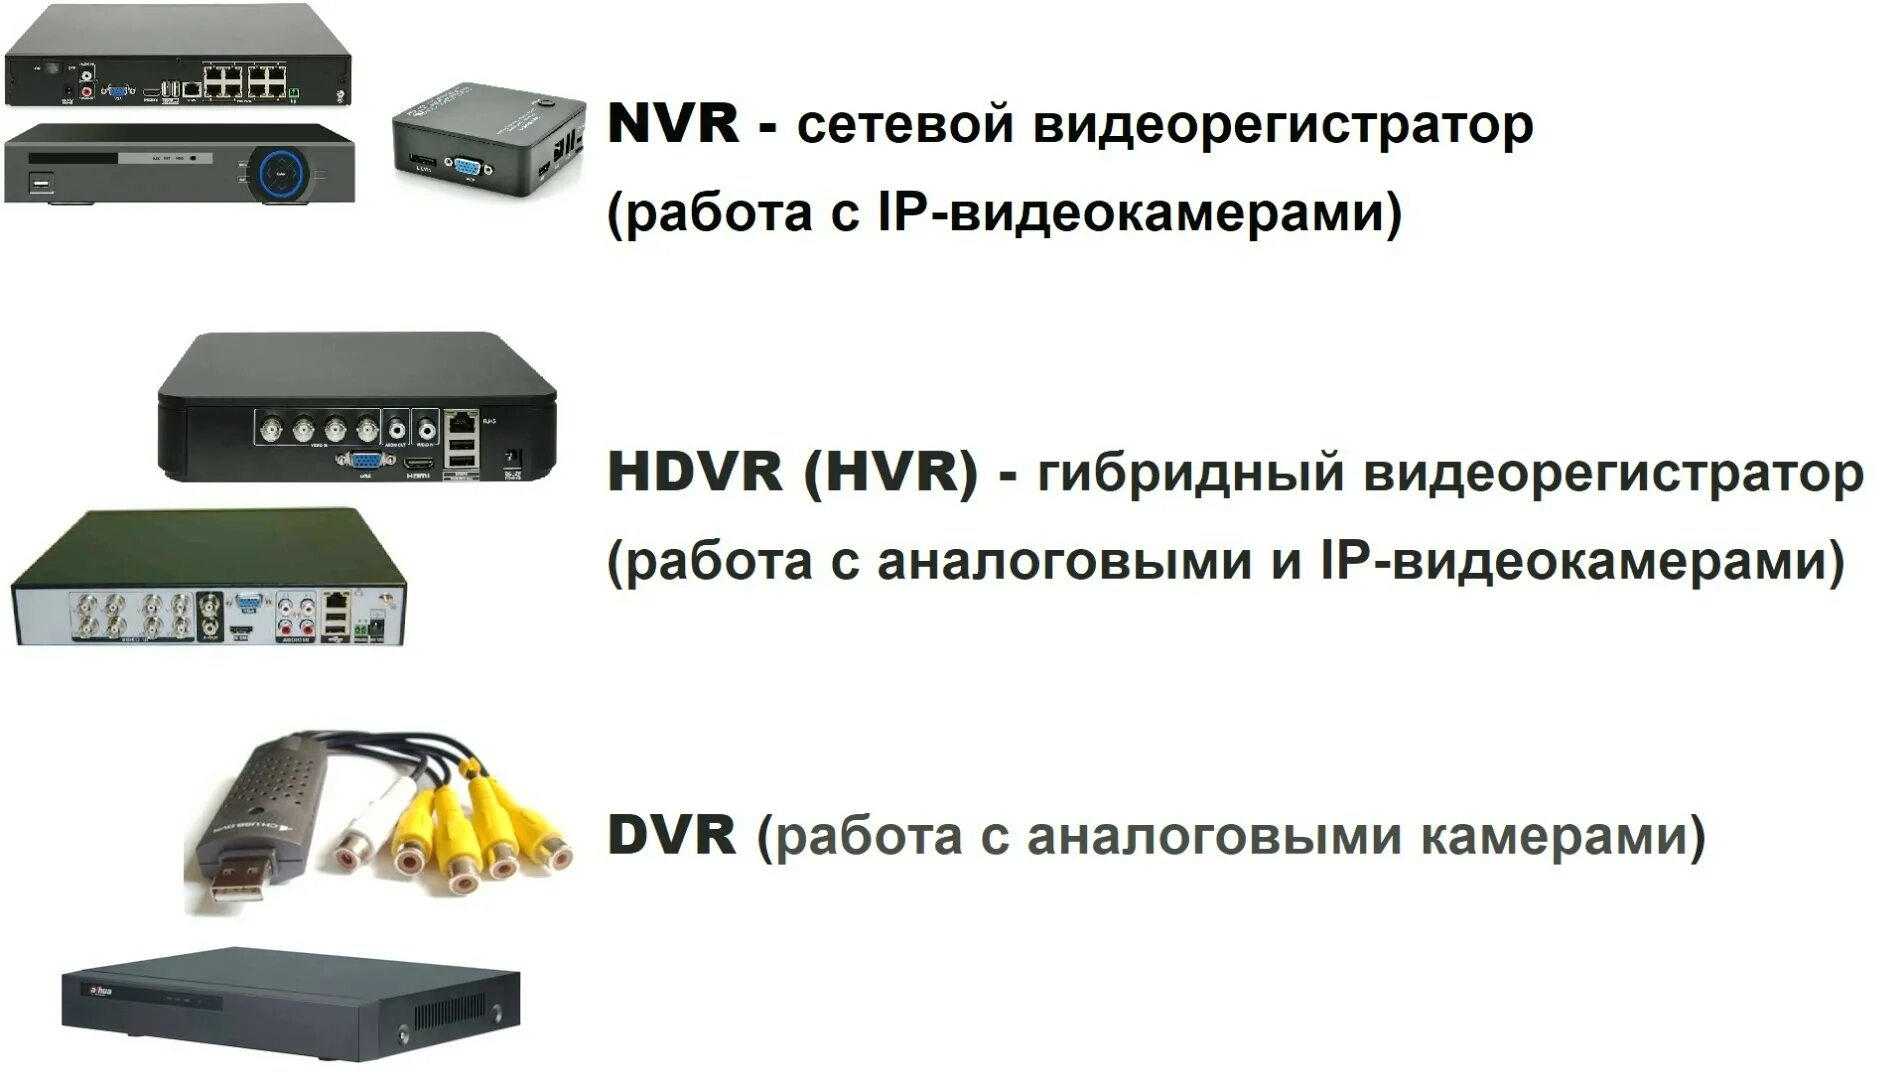 Типы видеорегистраторов. Видеорегистратор на 9 камер аналоговые. HVR (HDVR). Гибридный видеорегистратор монитор.